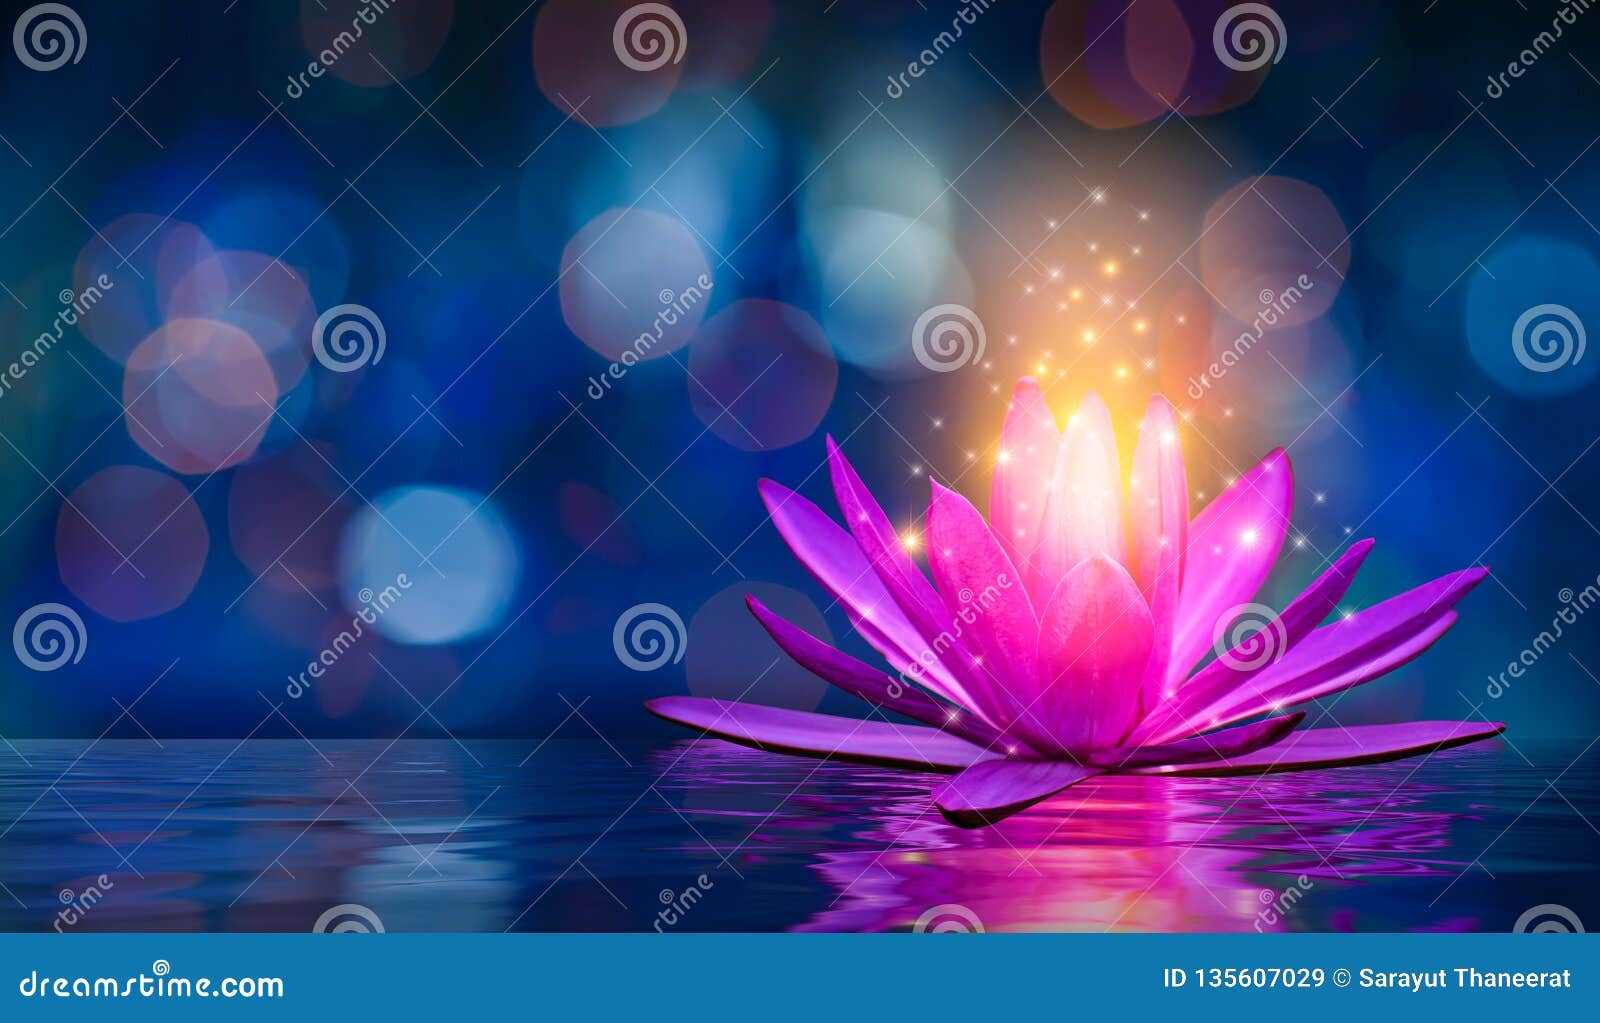 lotus pink light purple floating light sparkle purple background